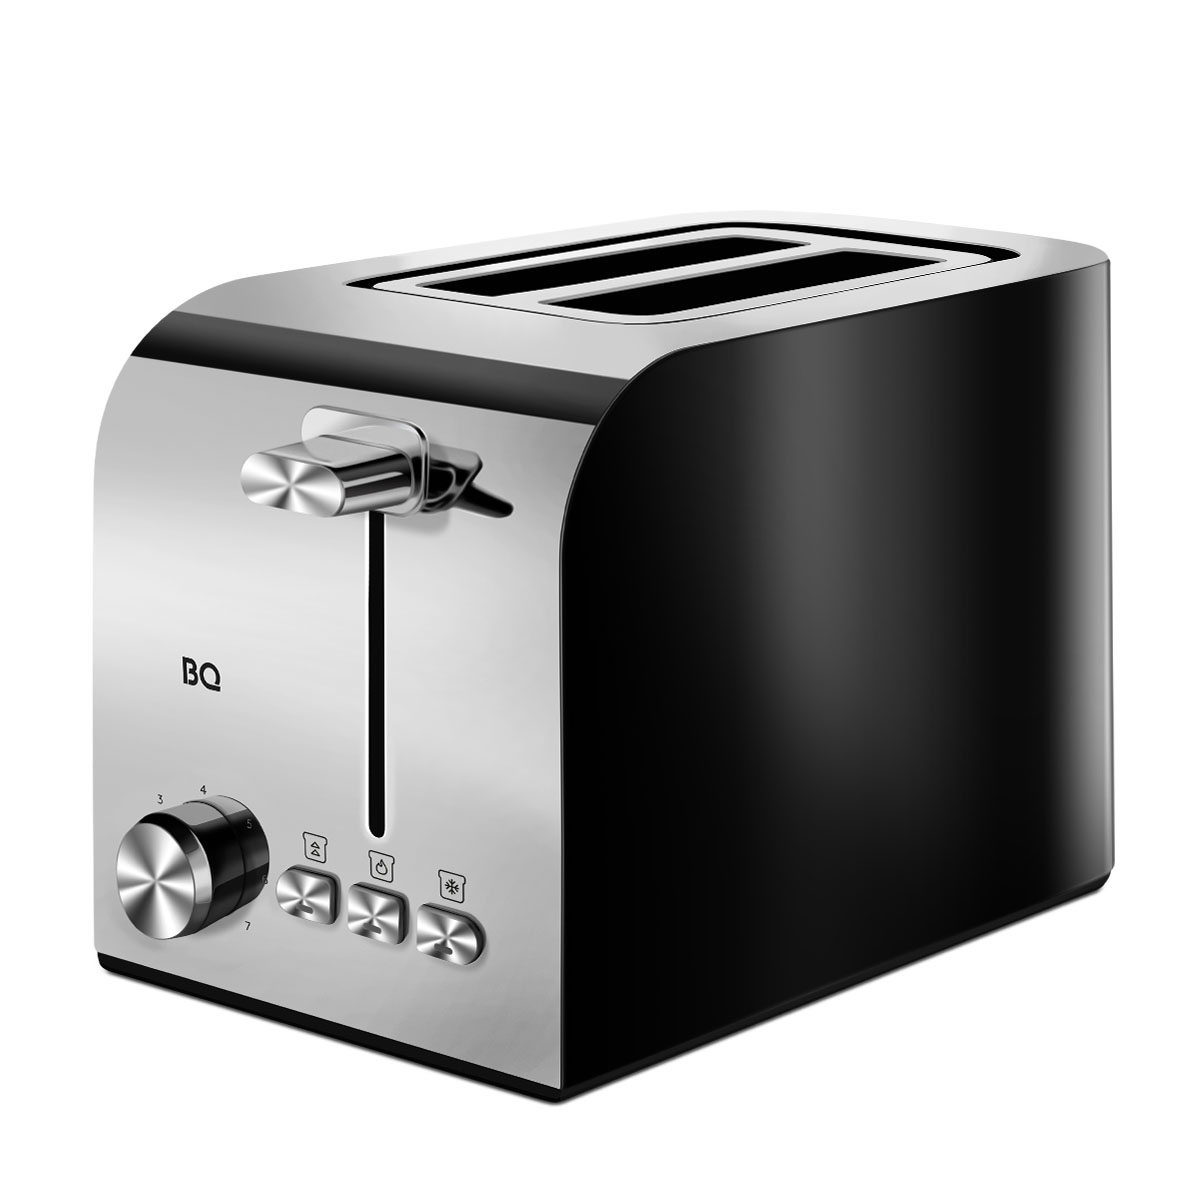 Тостер BQ T2000 серебристый, черный тостер jvc jk ts623 700 вт 6 режимов прожарки 2 тоста чёрный